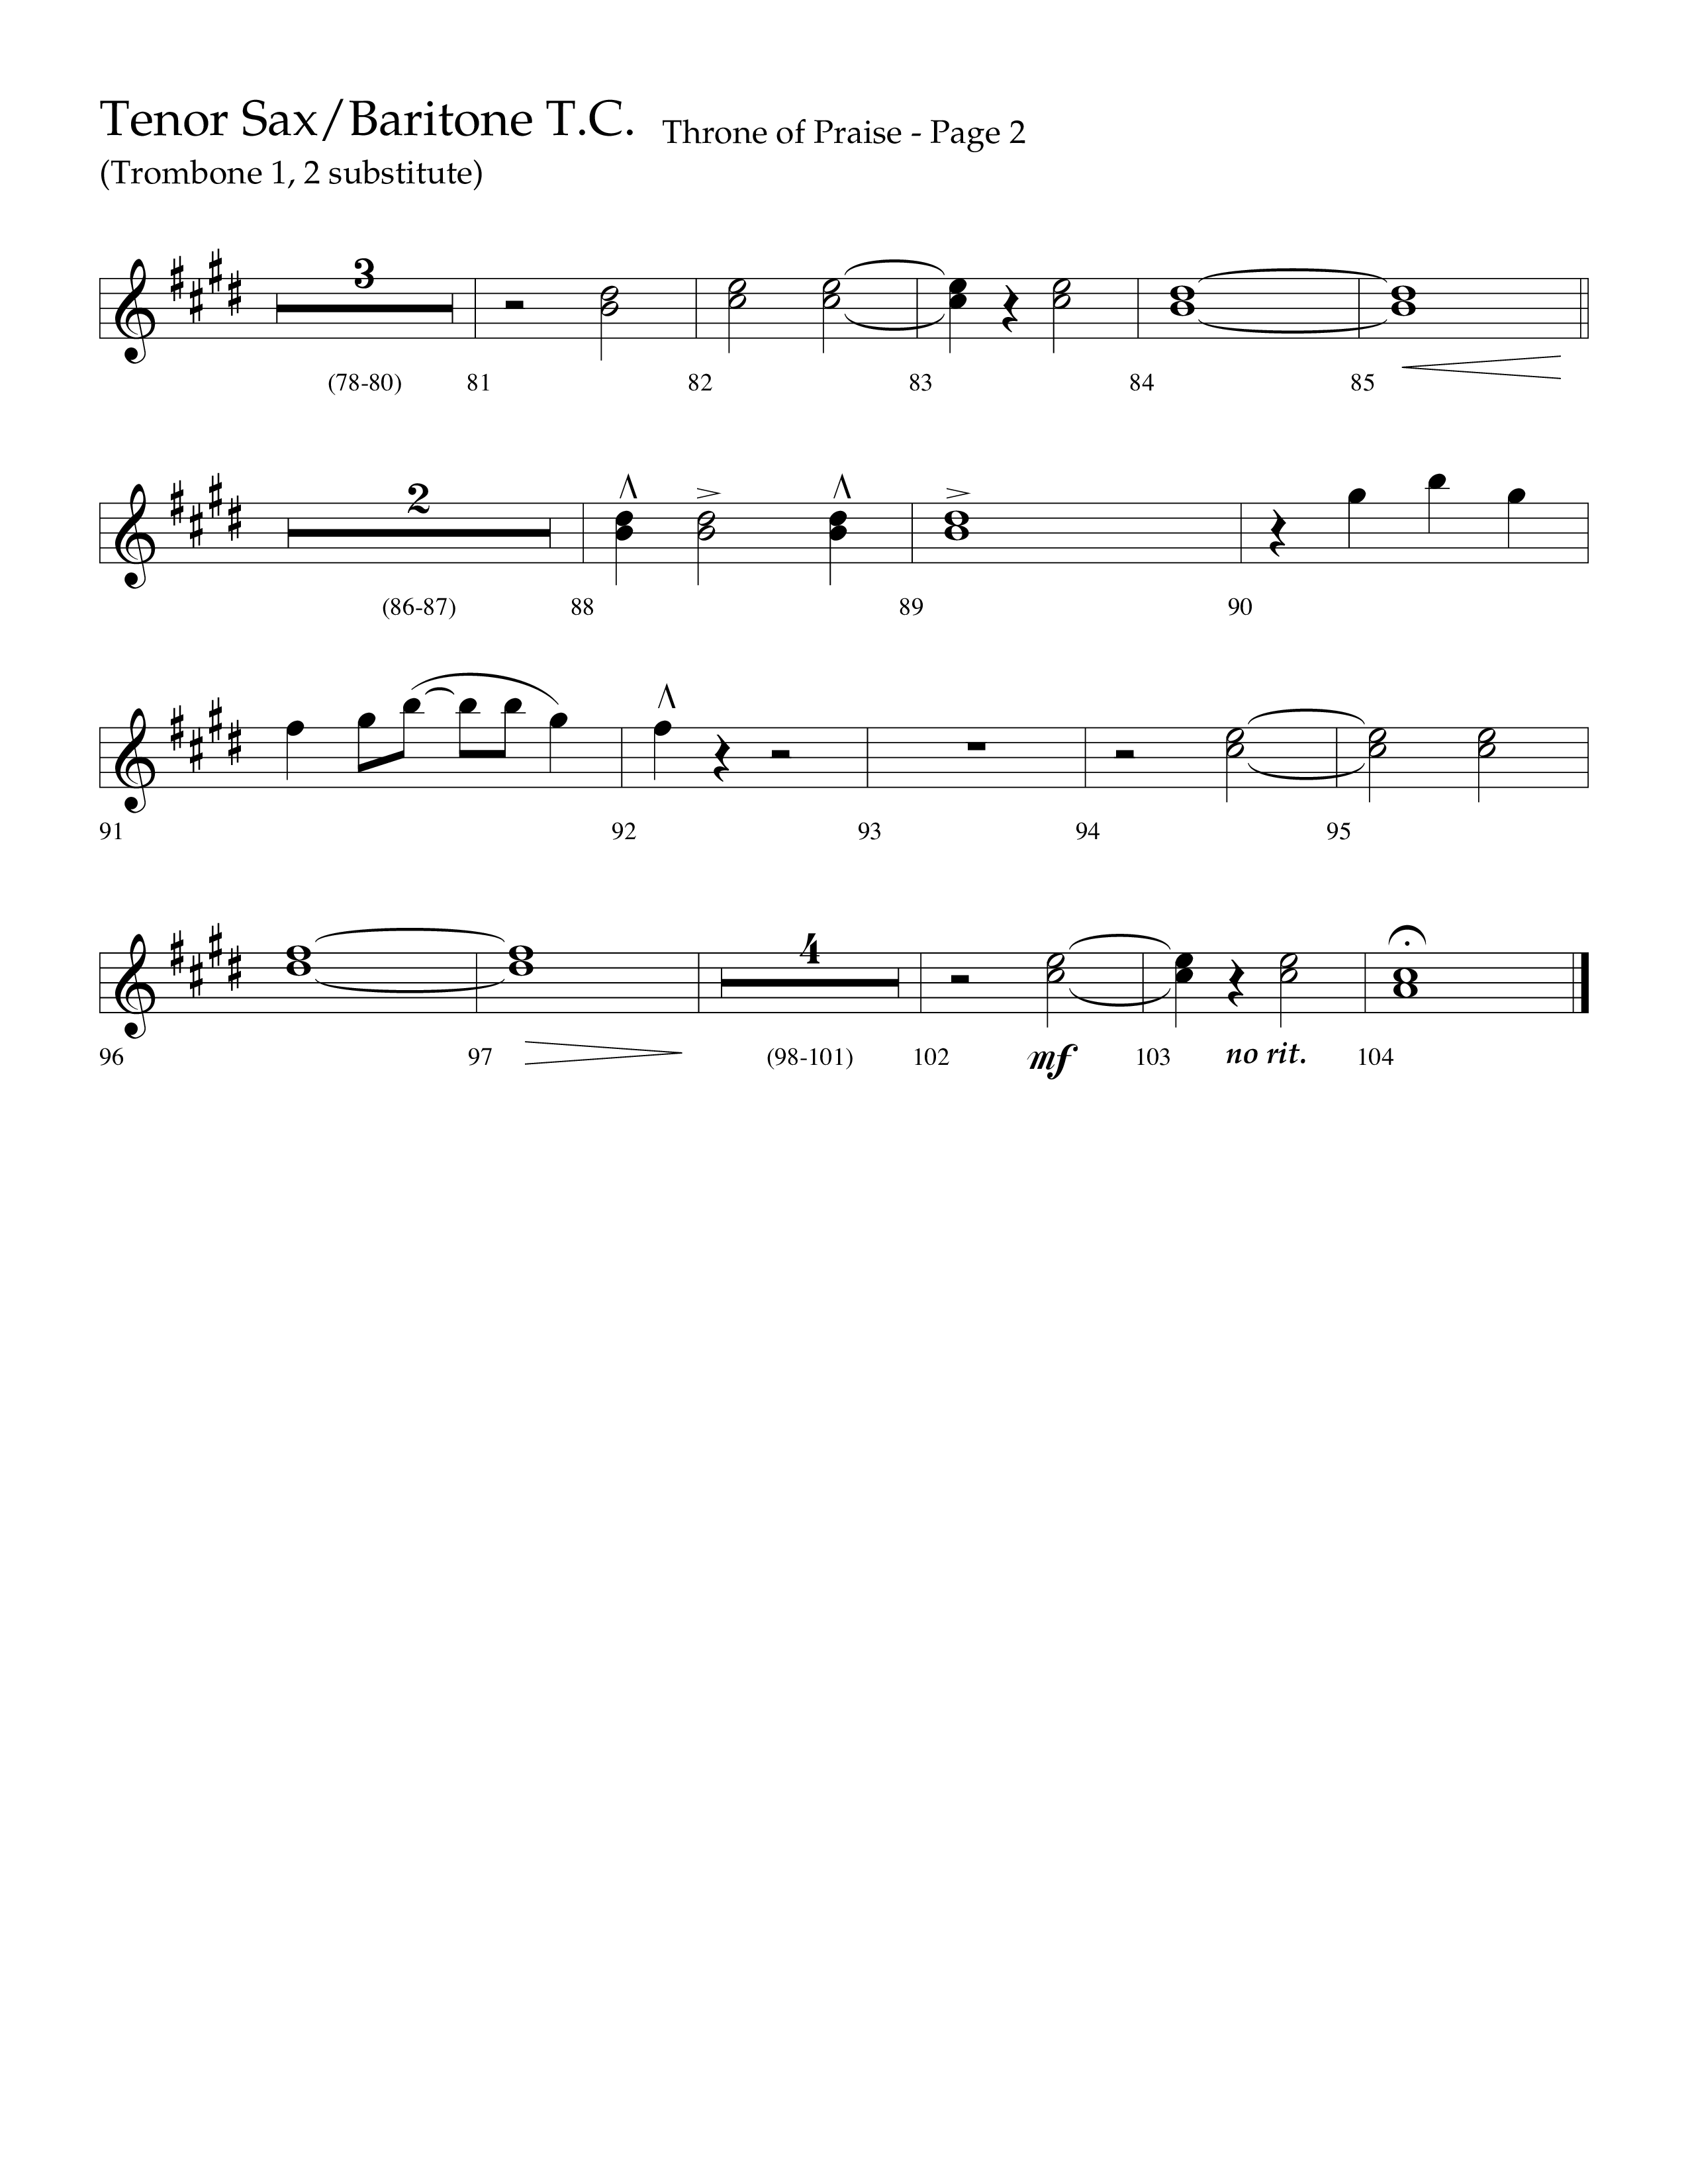 Throne Of Praise (Choral Anthem SATB) Tenor Sax/Baritone T.C. (Lifeway Choral / Arr. J. Daniel Smith)